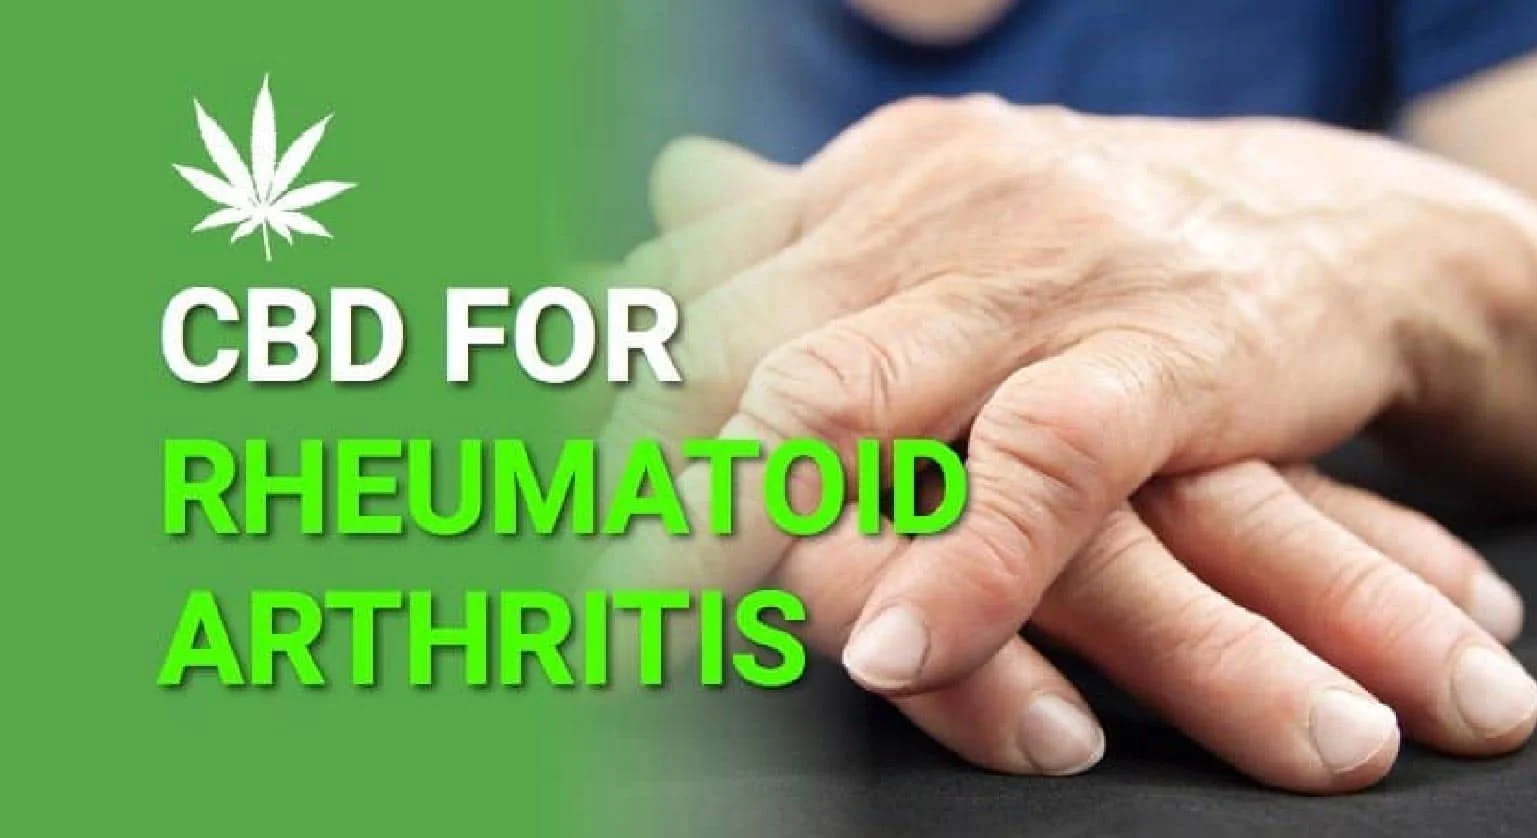 Does CBD Oil Help Arthritis